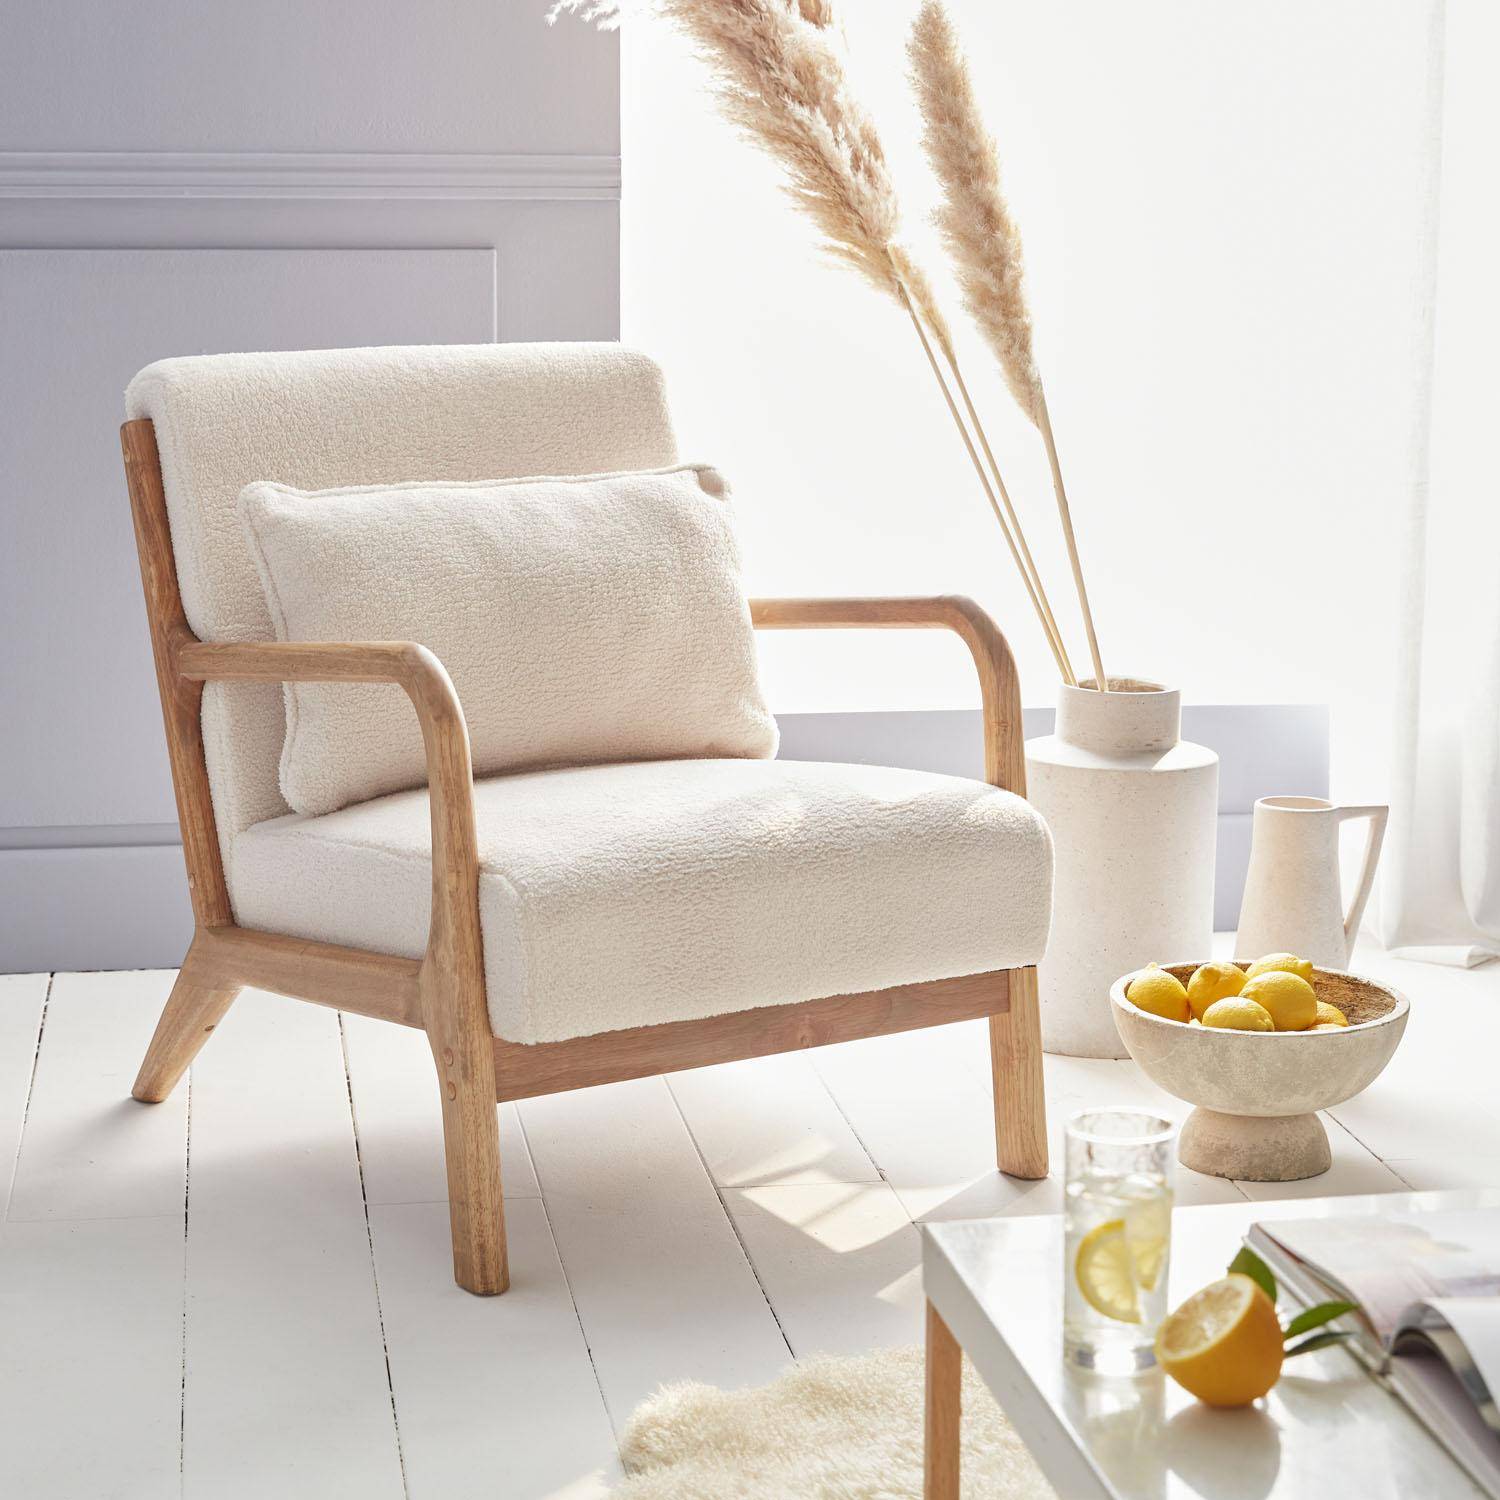 Poltrona di design in legno e tessuto bouclé, 1 seduta fissa diritta, gambe a compasso scandinave, beige Photo1